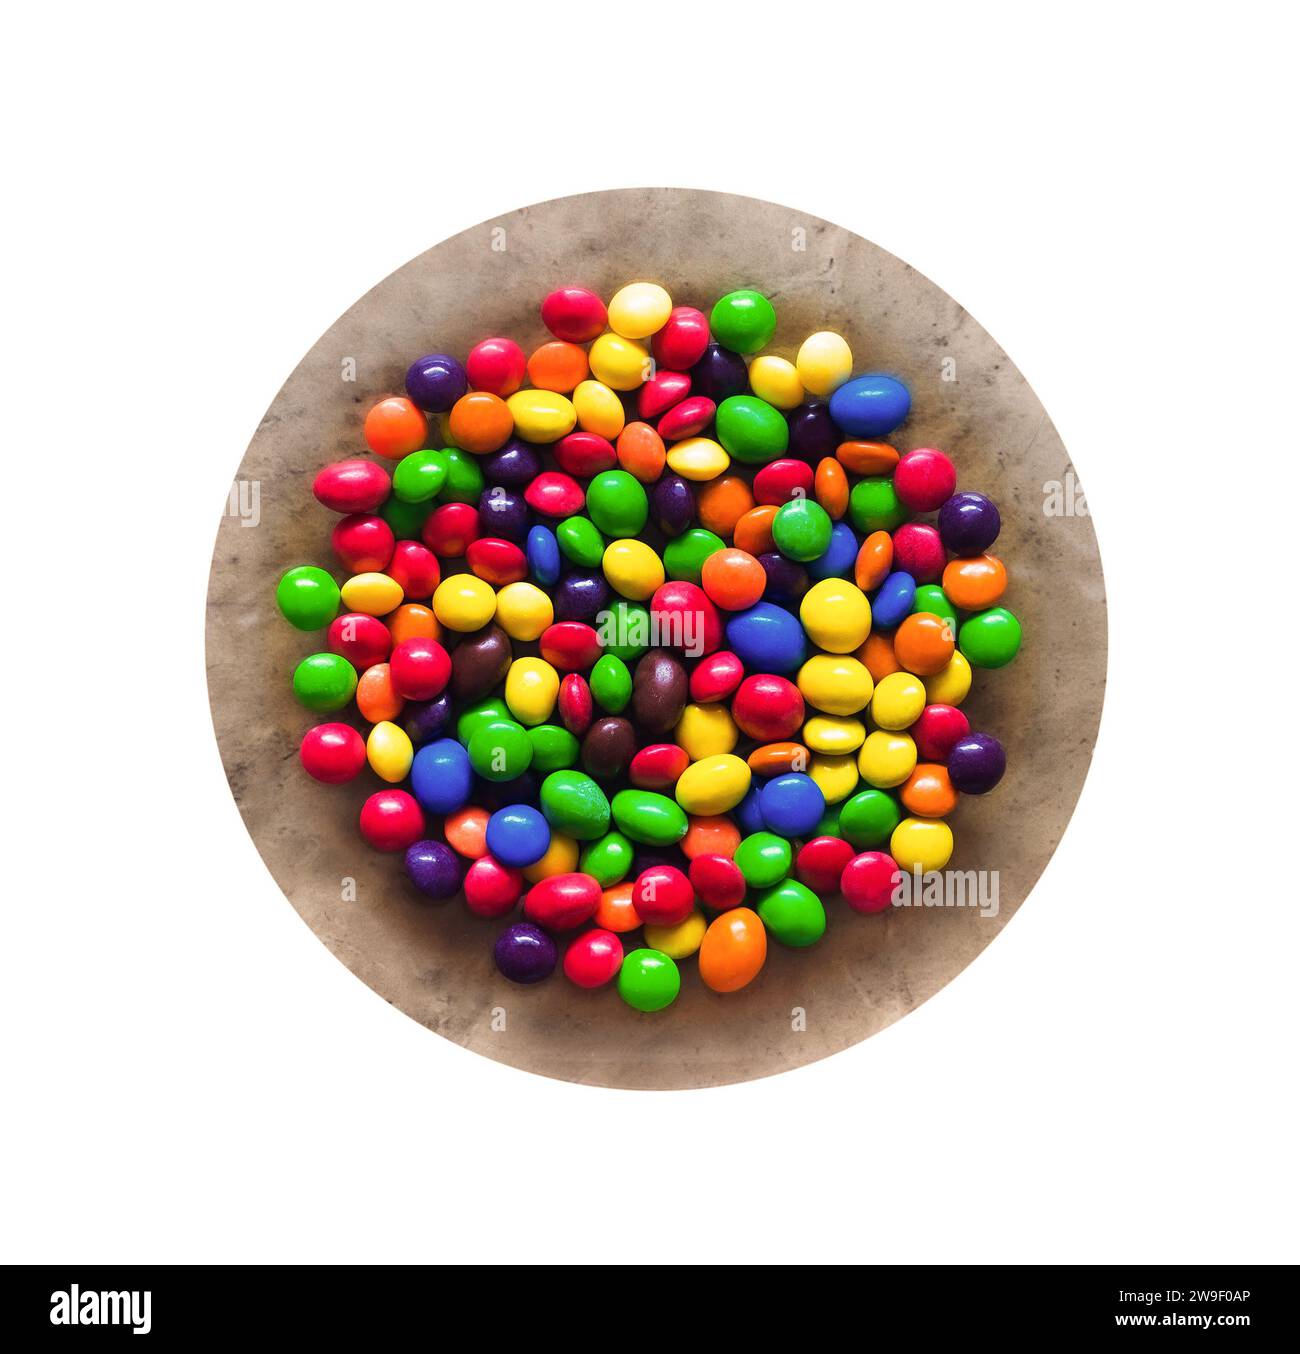 colorate caramelle dolci o chewing gum dragee su piatto, isolato Foto Stock